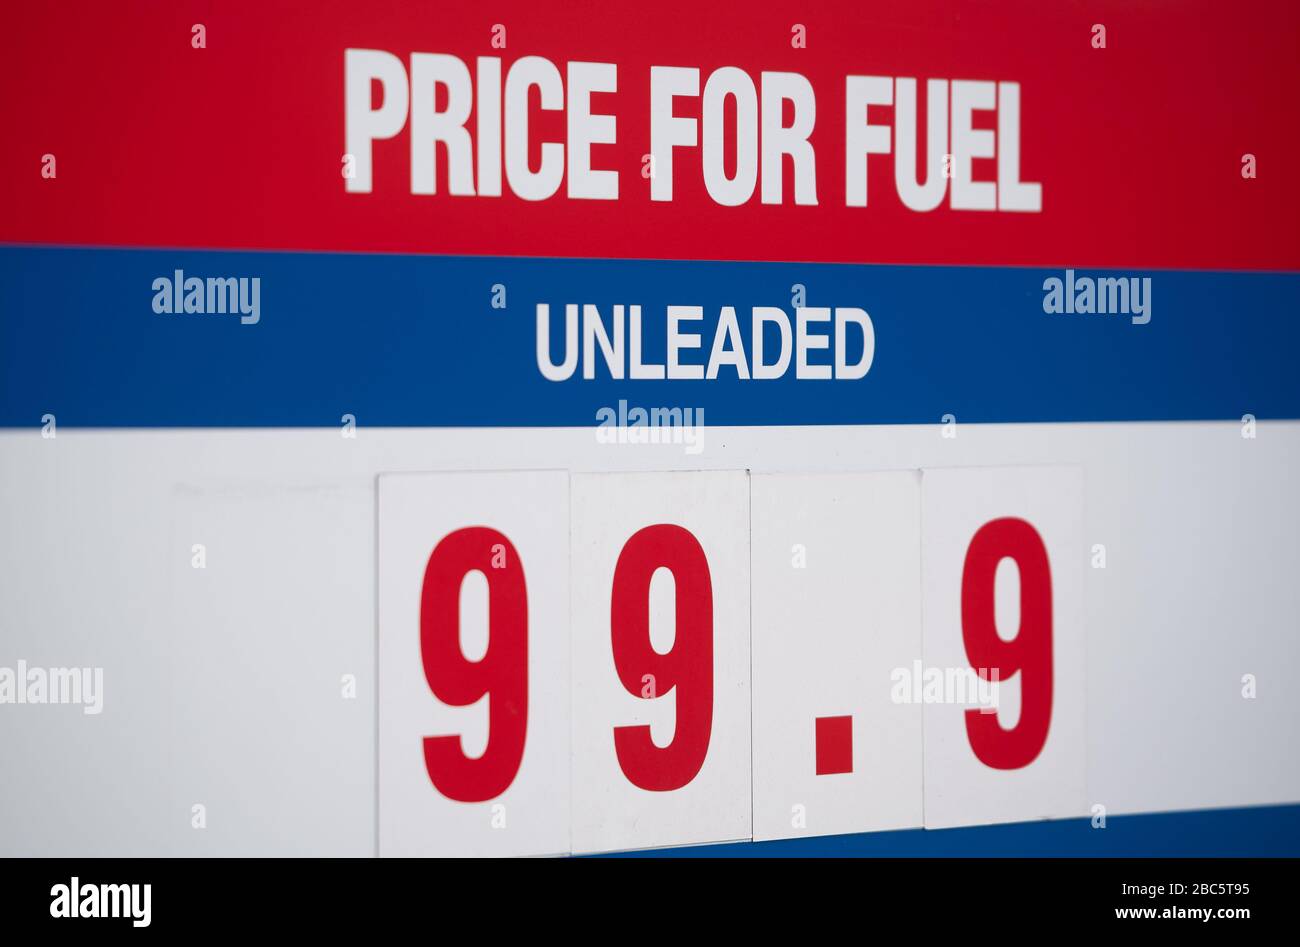 Le prix de l'essence affiché à 99.9p/litre à la station de remplissage Costco à Leicester, car les effets du ralentissement économique causé par le coronavirus pèsent sur la baisse des prix mondiaux du pétrole. Banque D'Images